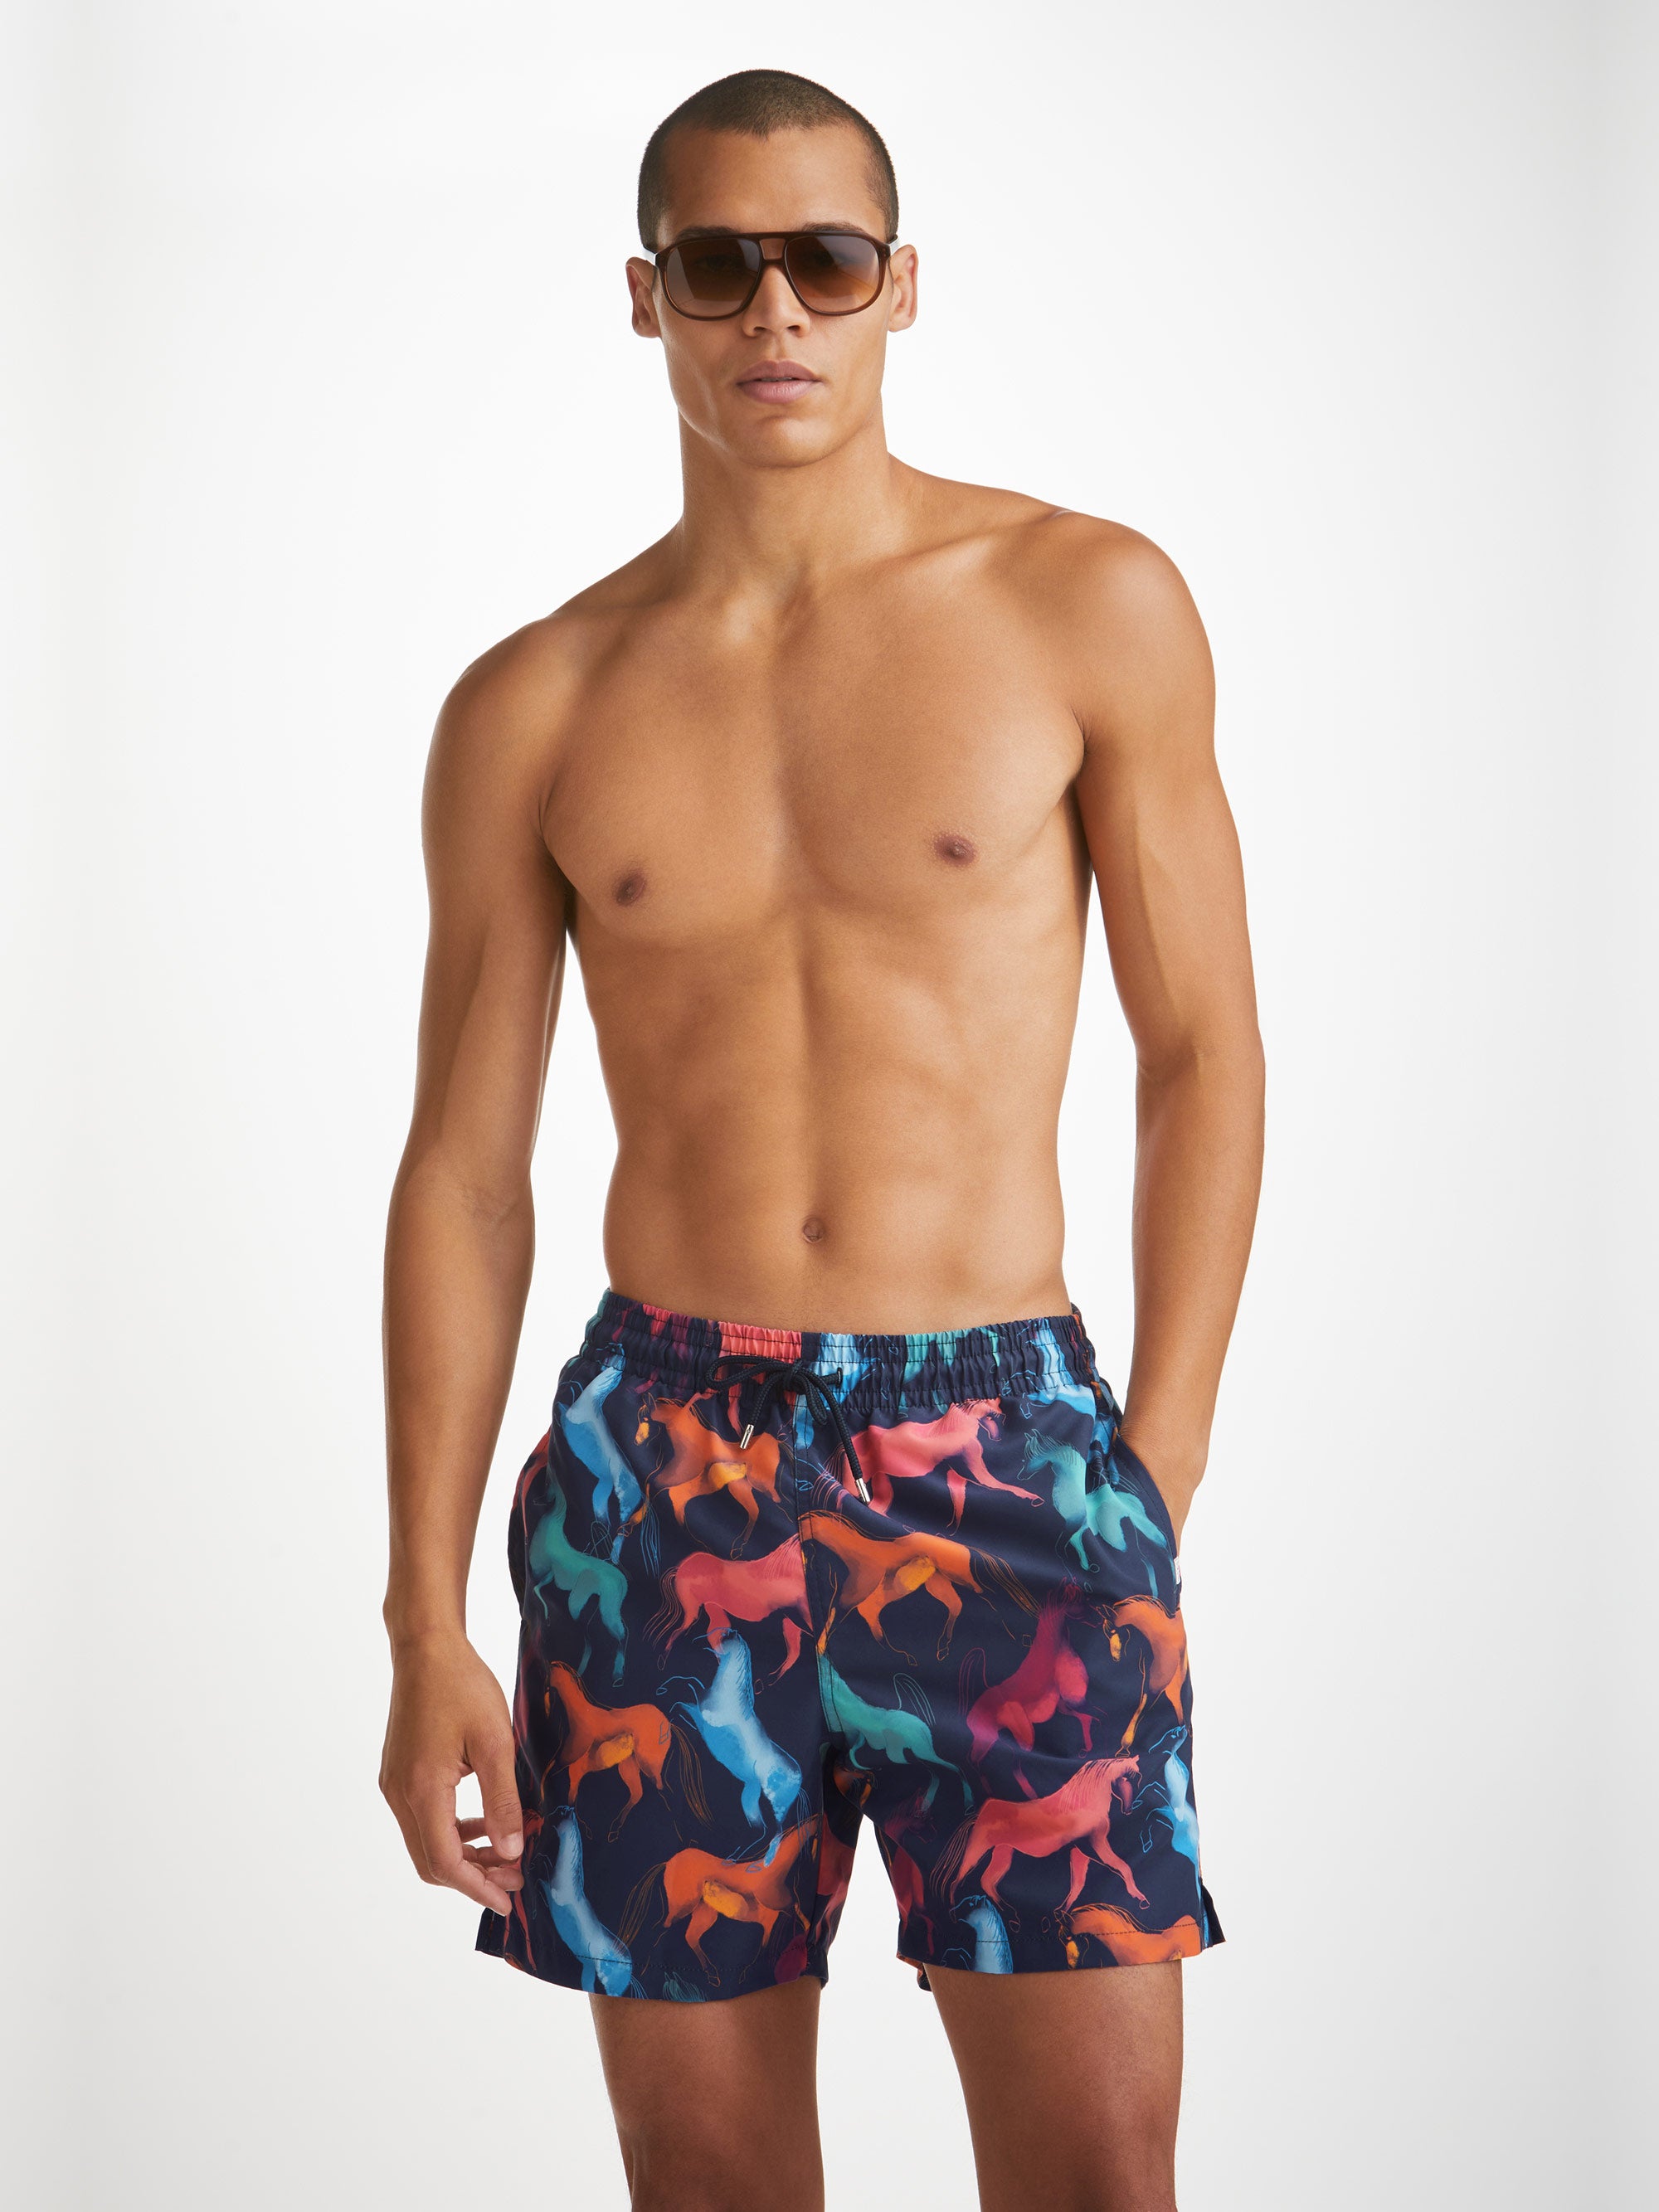 Men's Swimwear Collection, Luxury Essentials